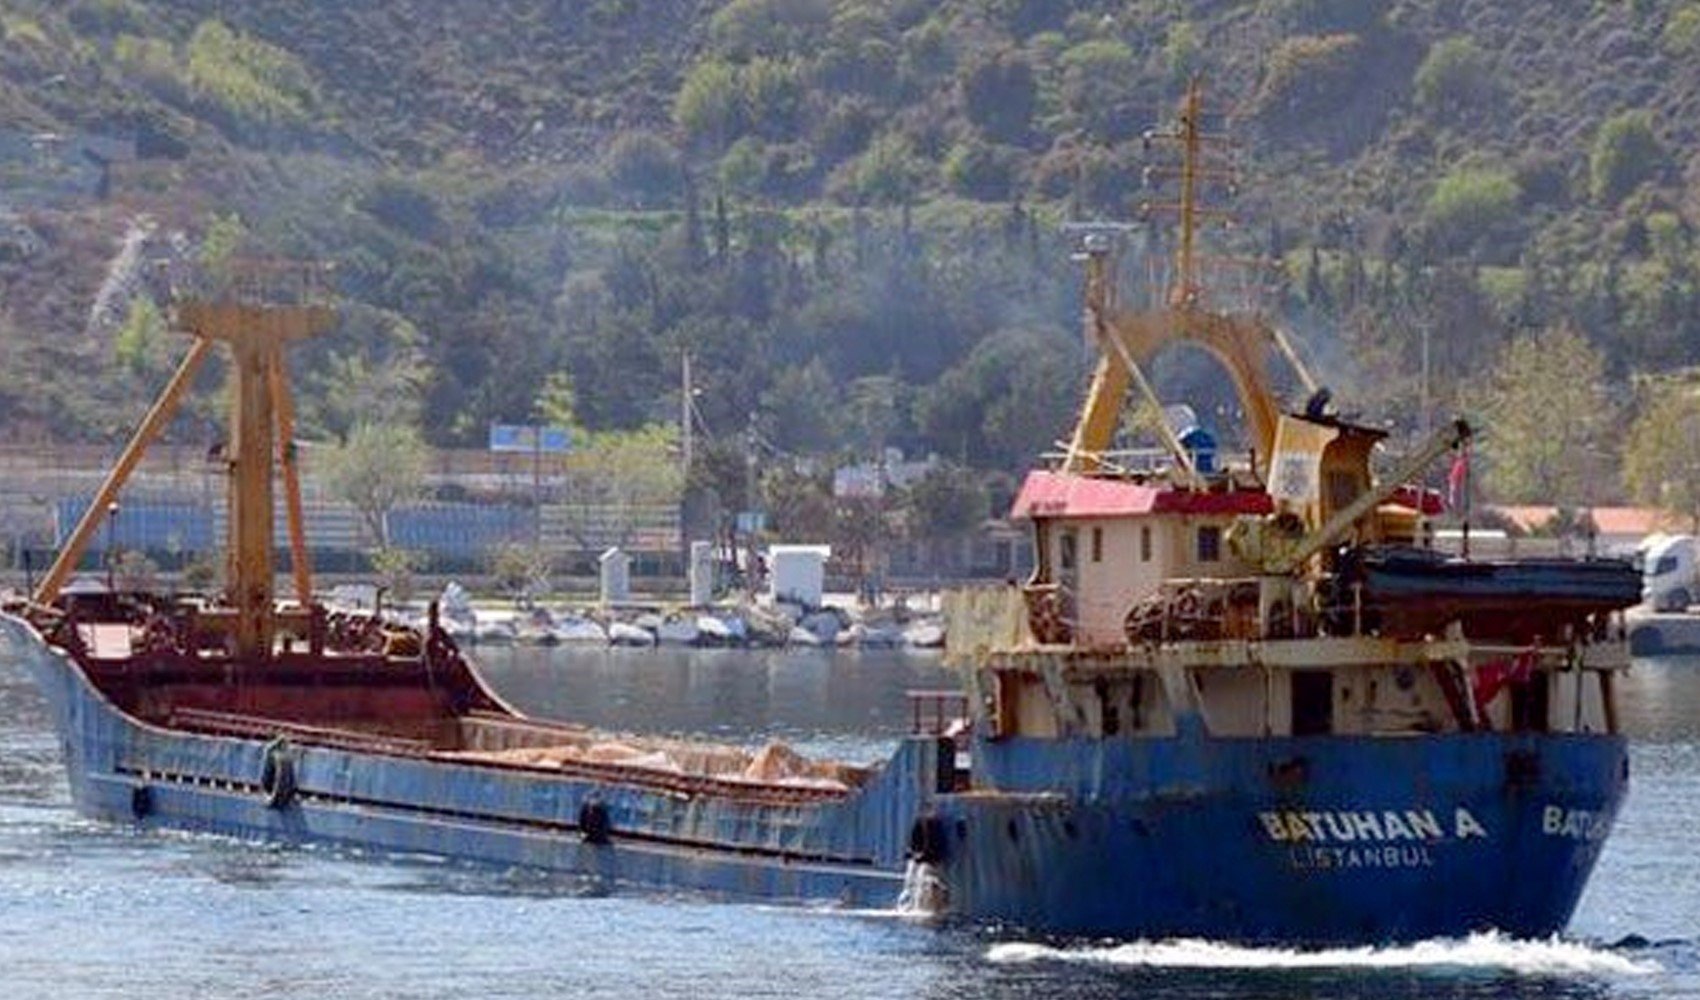 Marmara Denizi'nde batan gemiyle ilgili Bursa Valiliği'nden açıklama